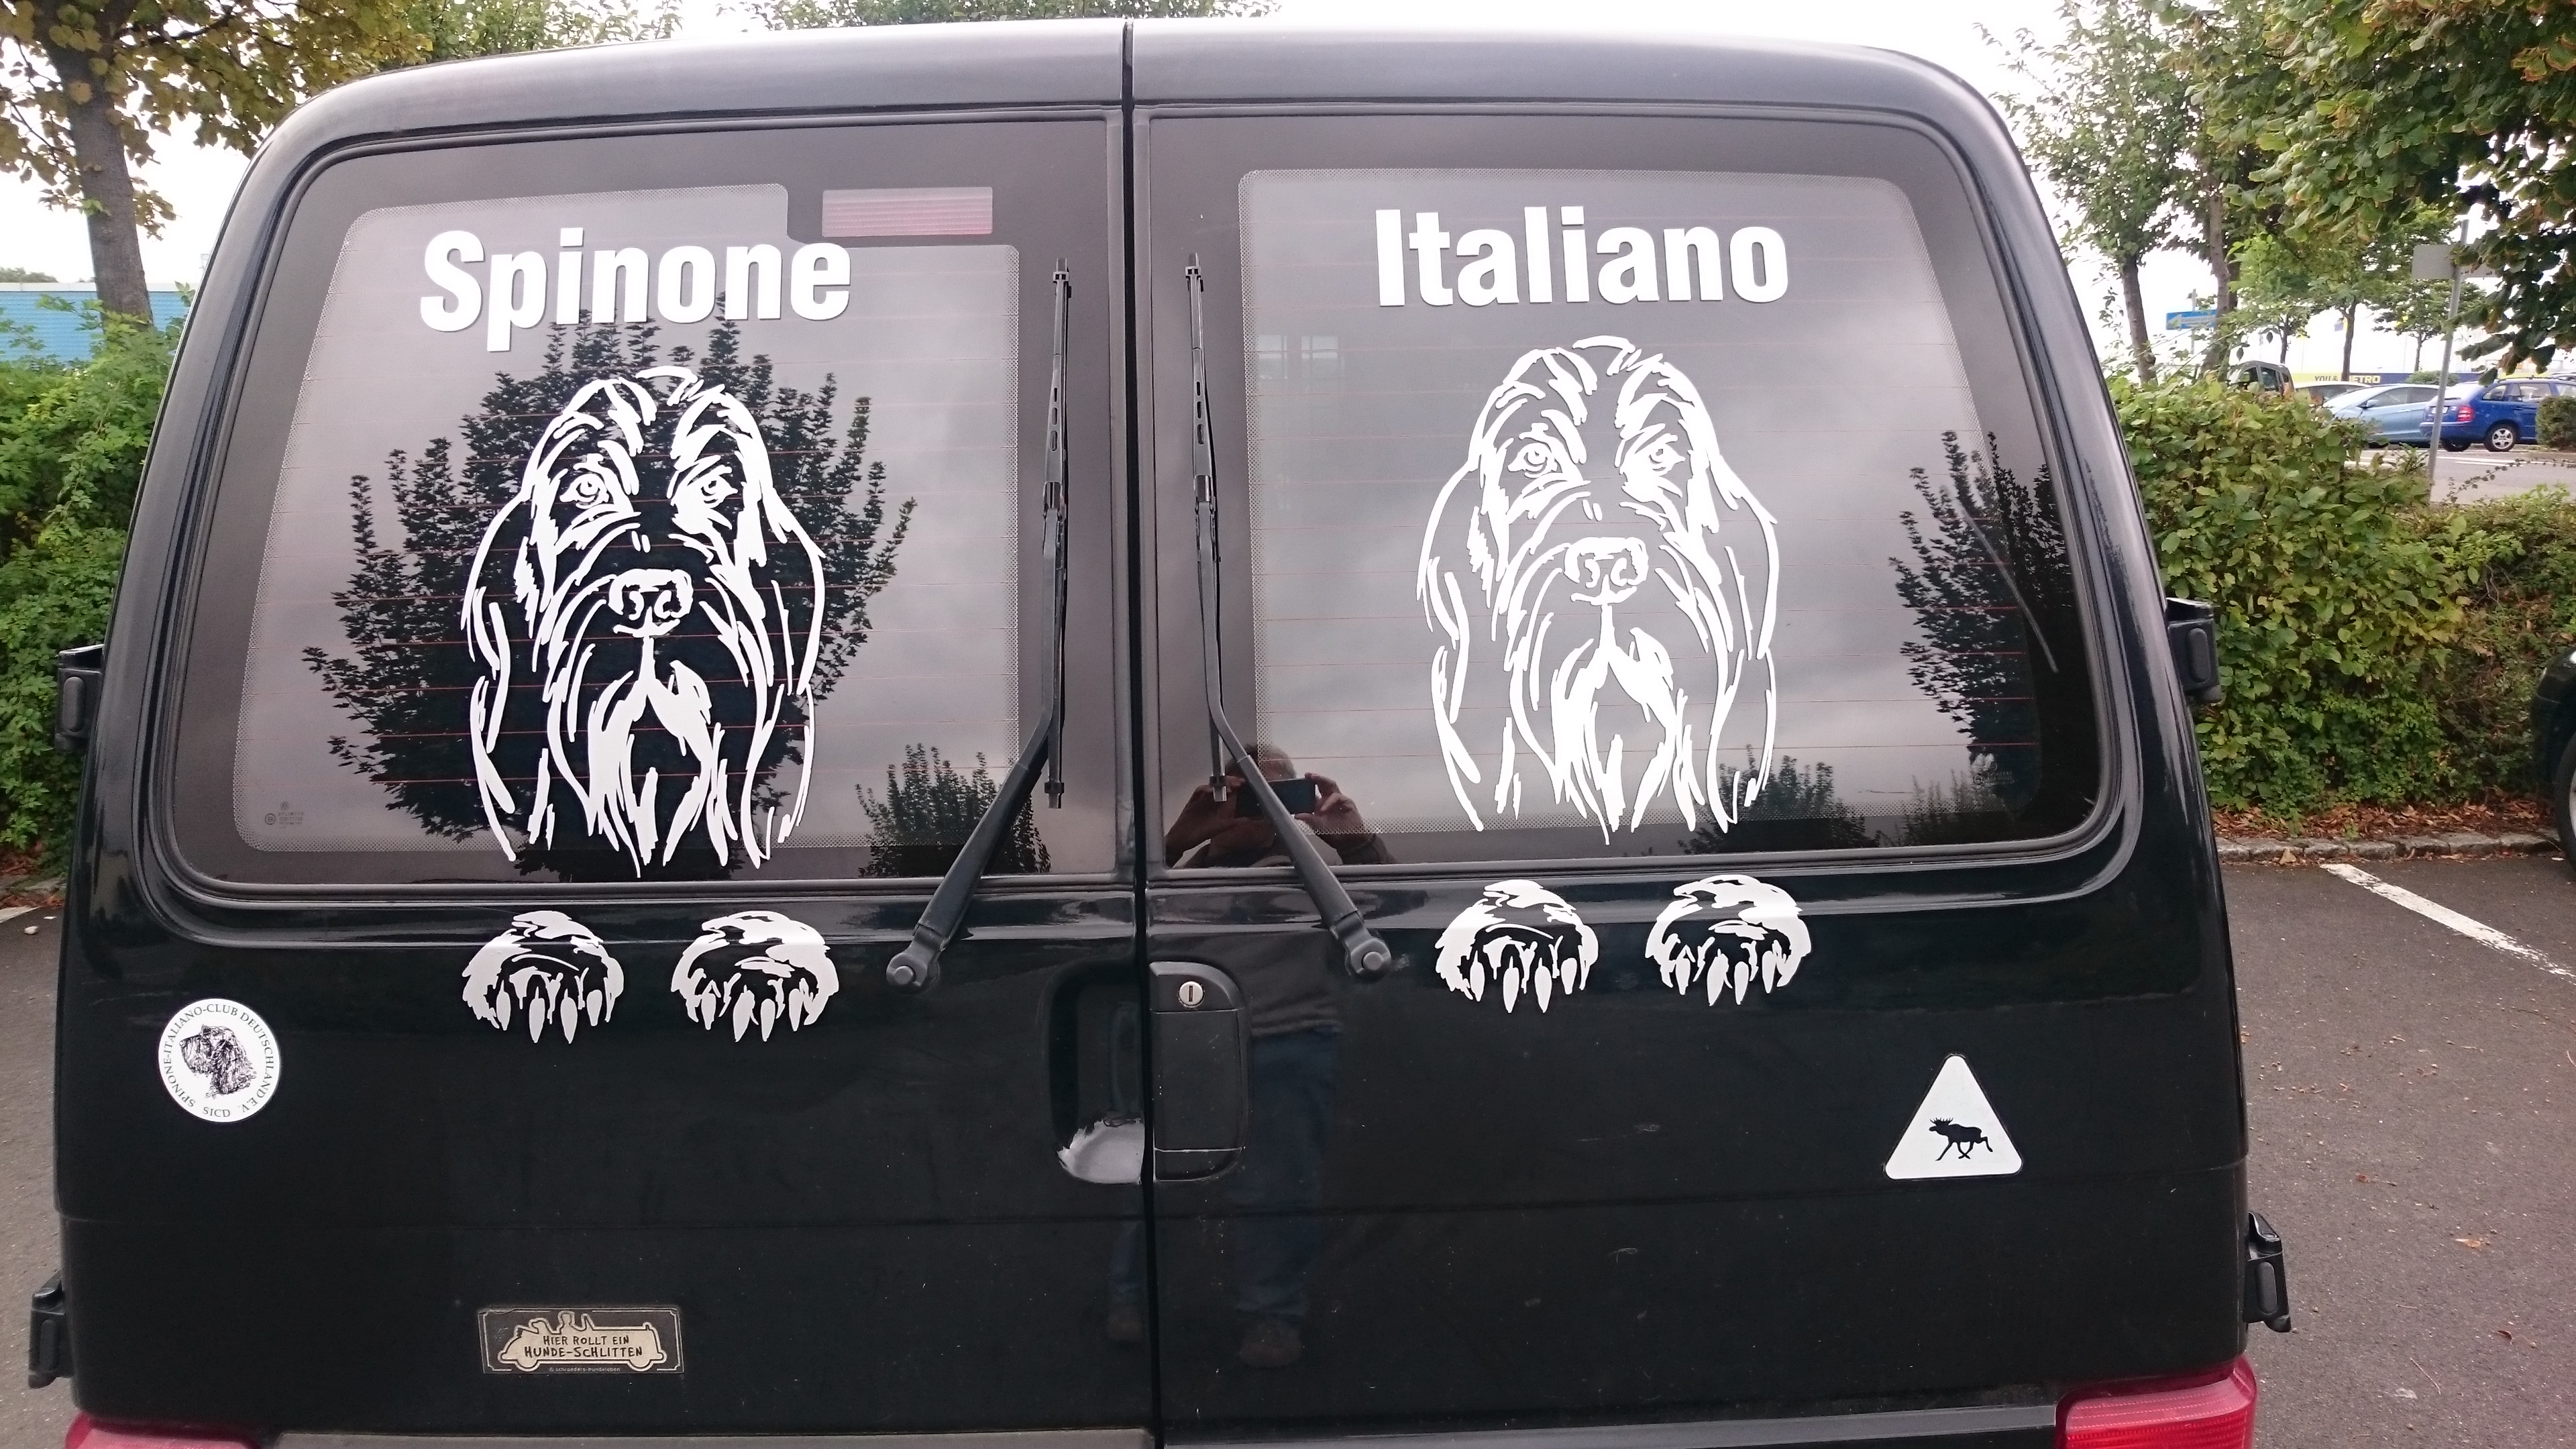 "Spinone Italiano Transportmobil"